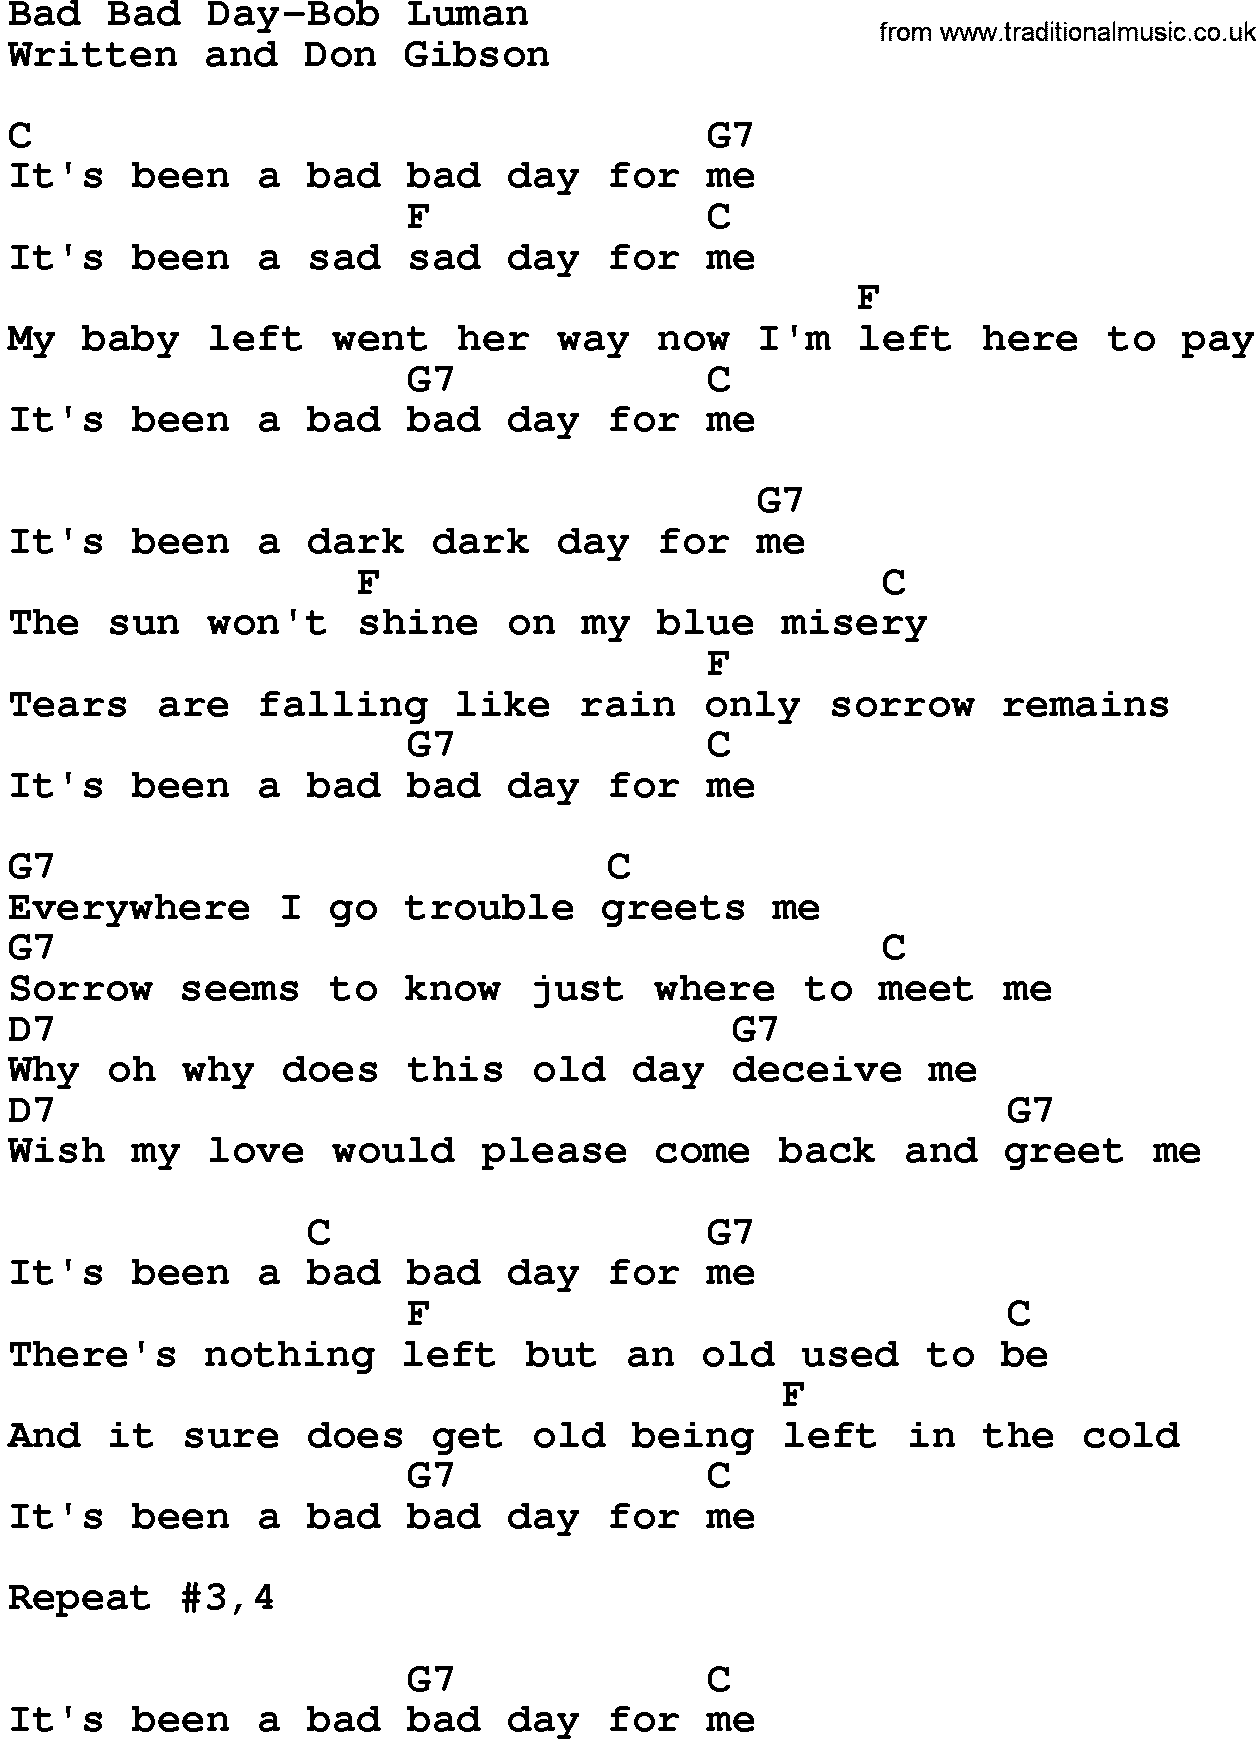 Country music song: Bad Bad Day-Bob Luman lyrics and chords